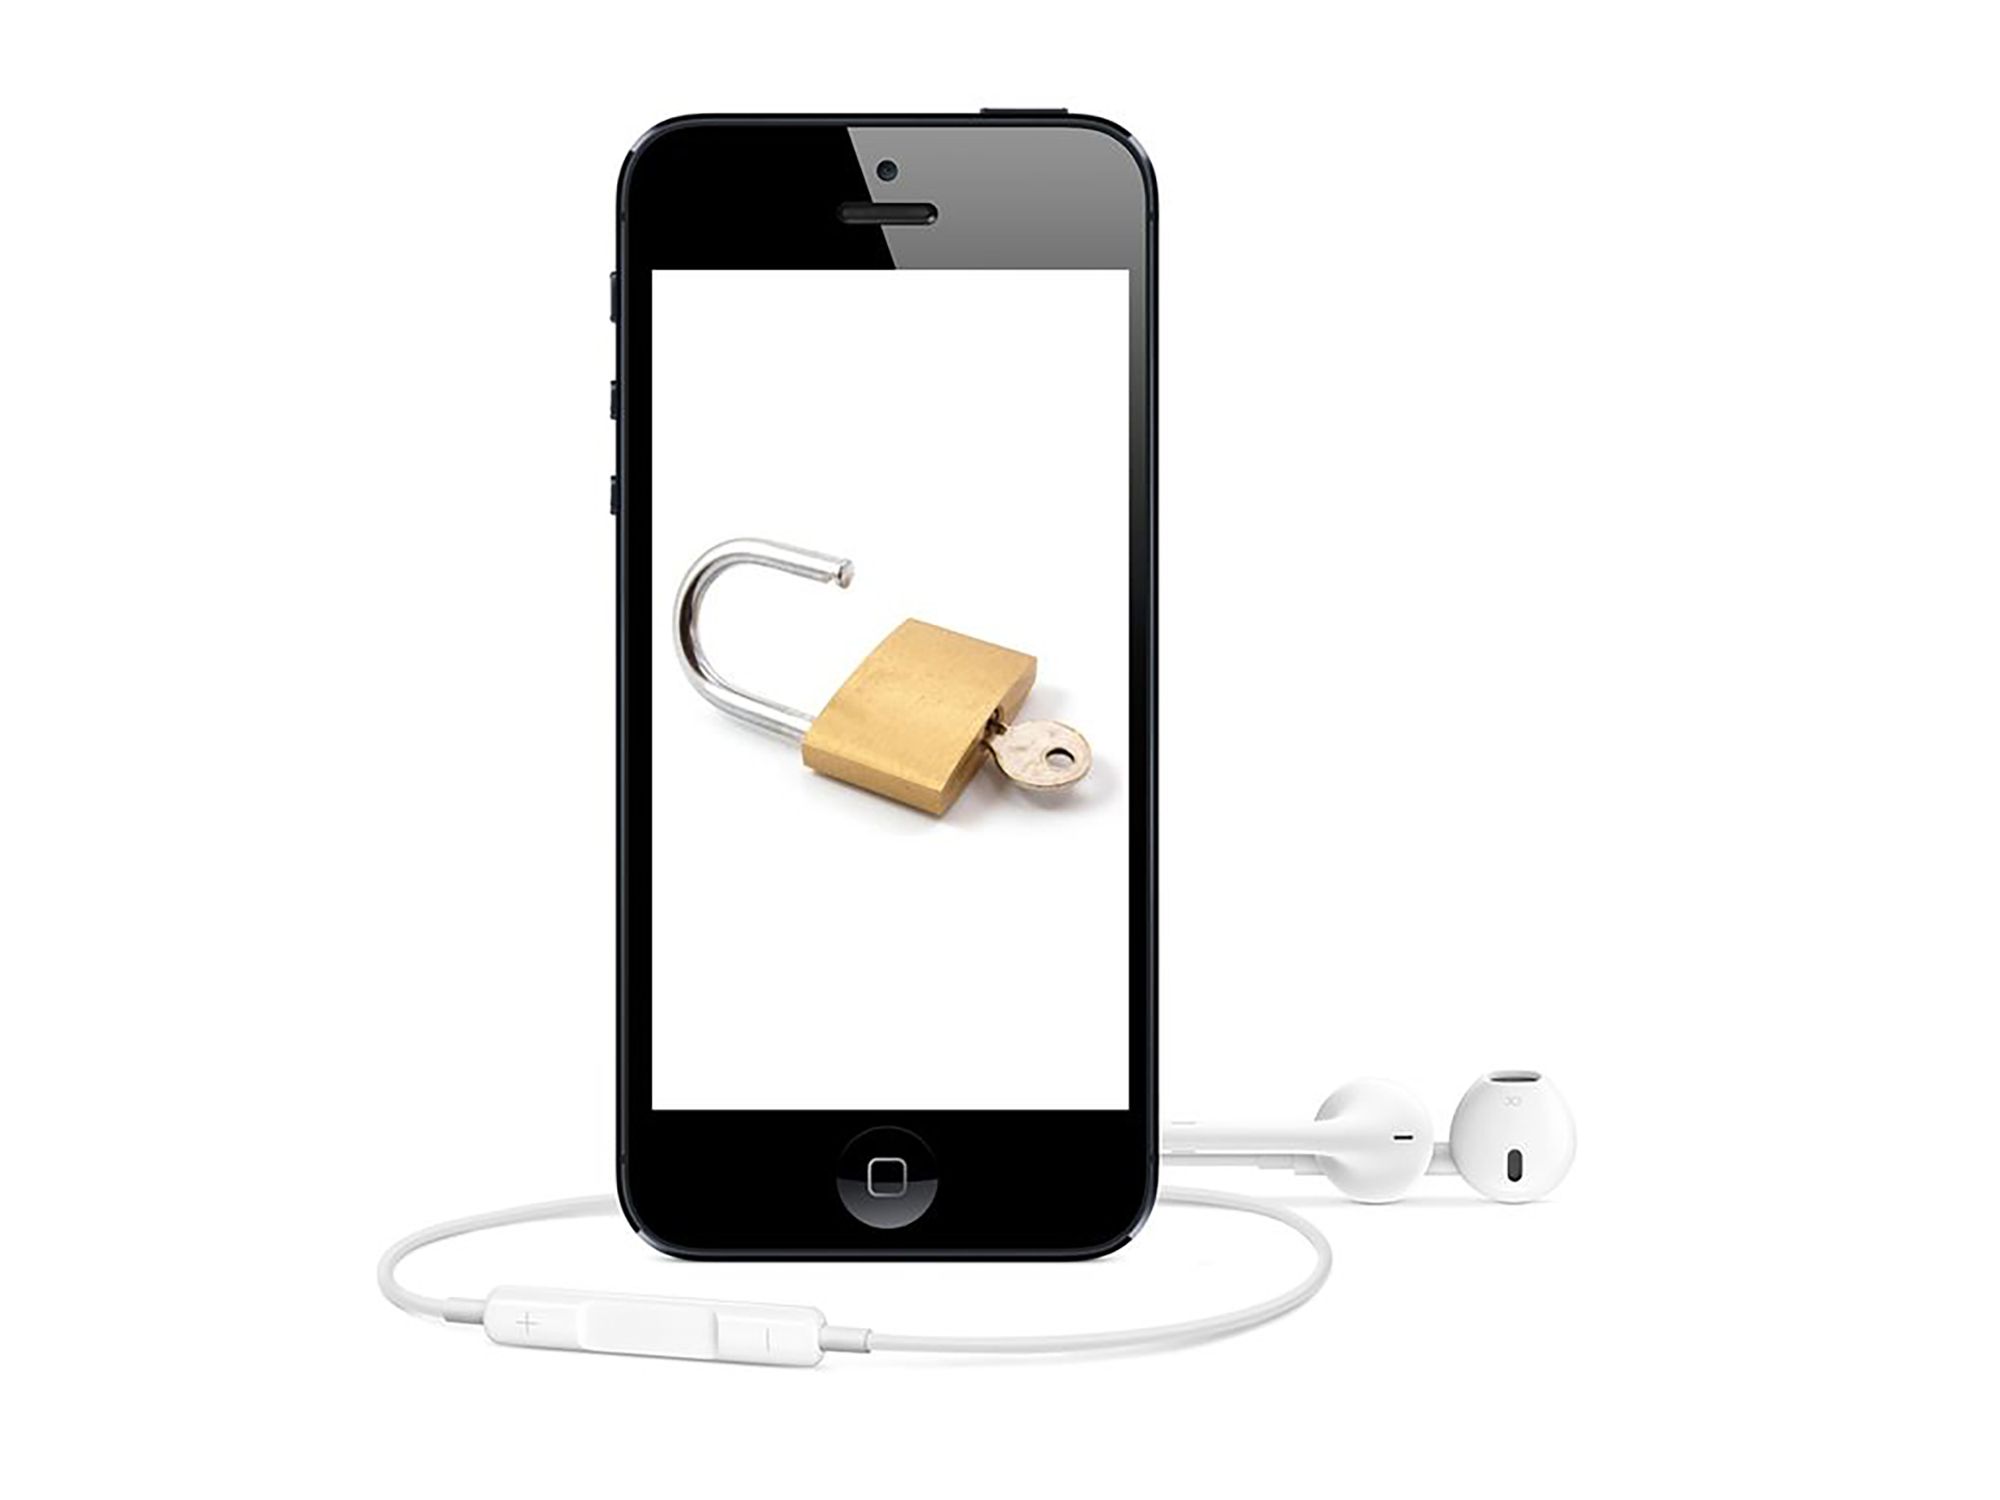 Ontgrendelen &  jailbreak vervalt iPhone garantie?